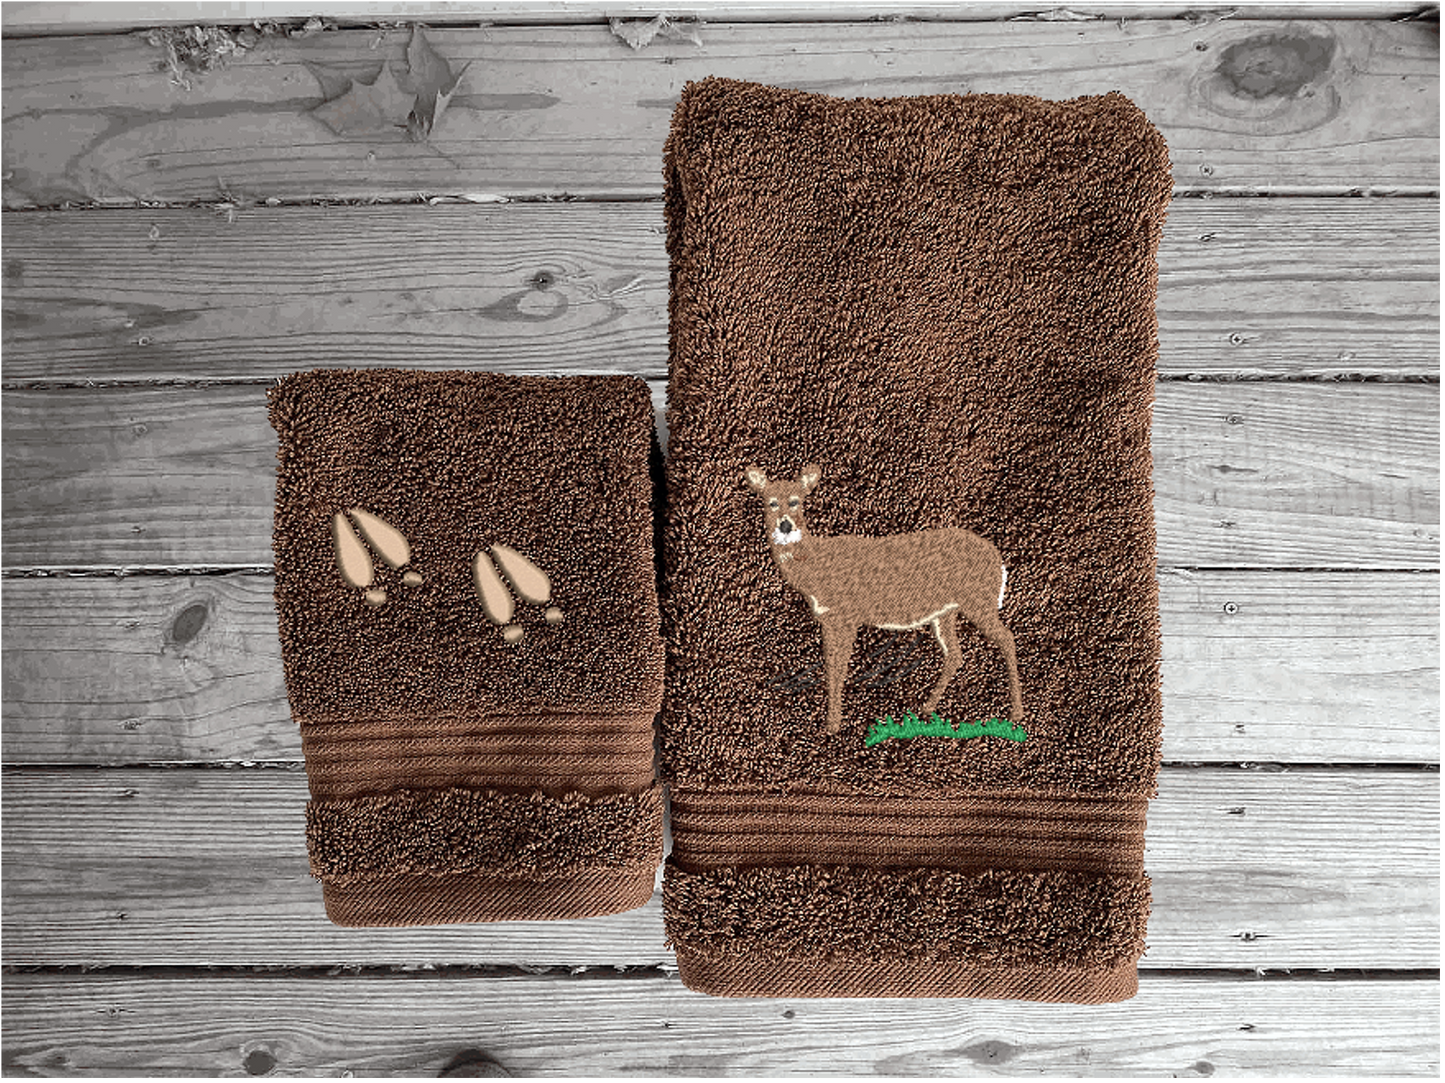 Deer - Embroidered Brown Bath Towel Set -Or Individual